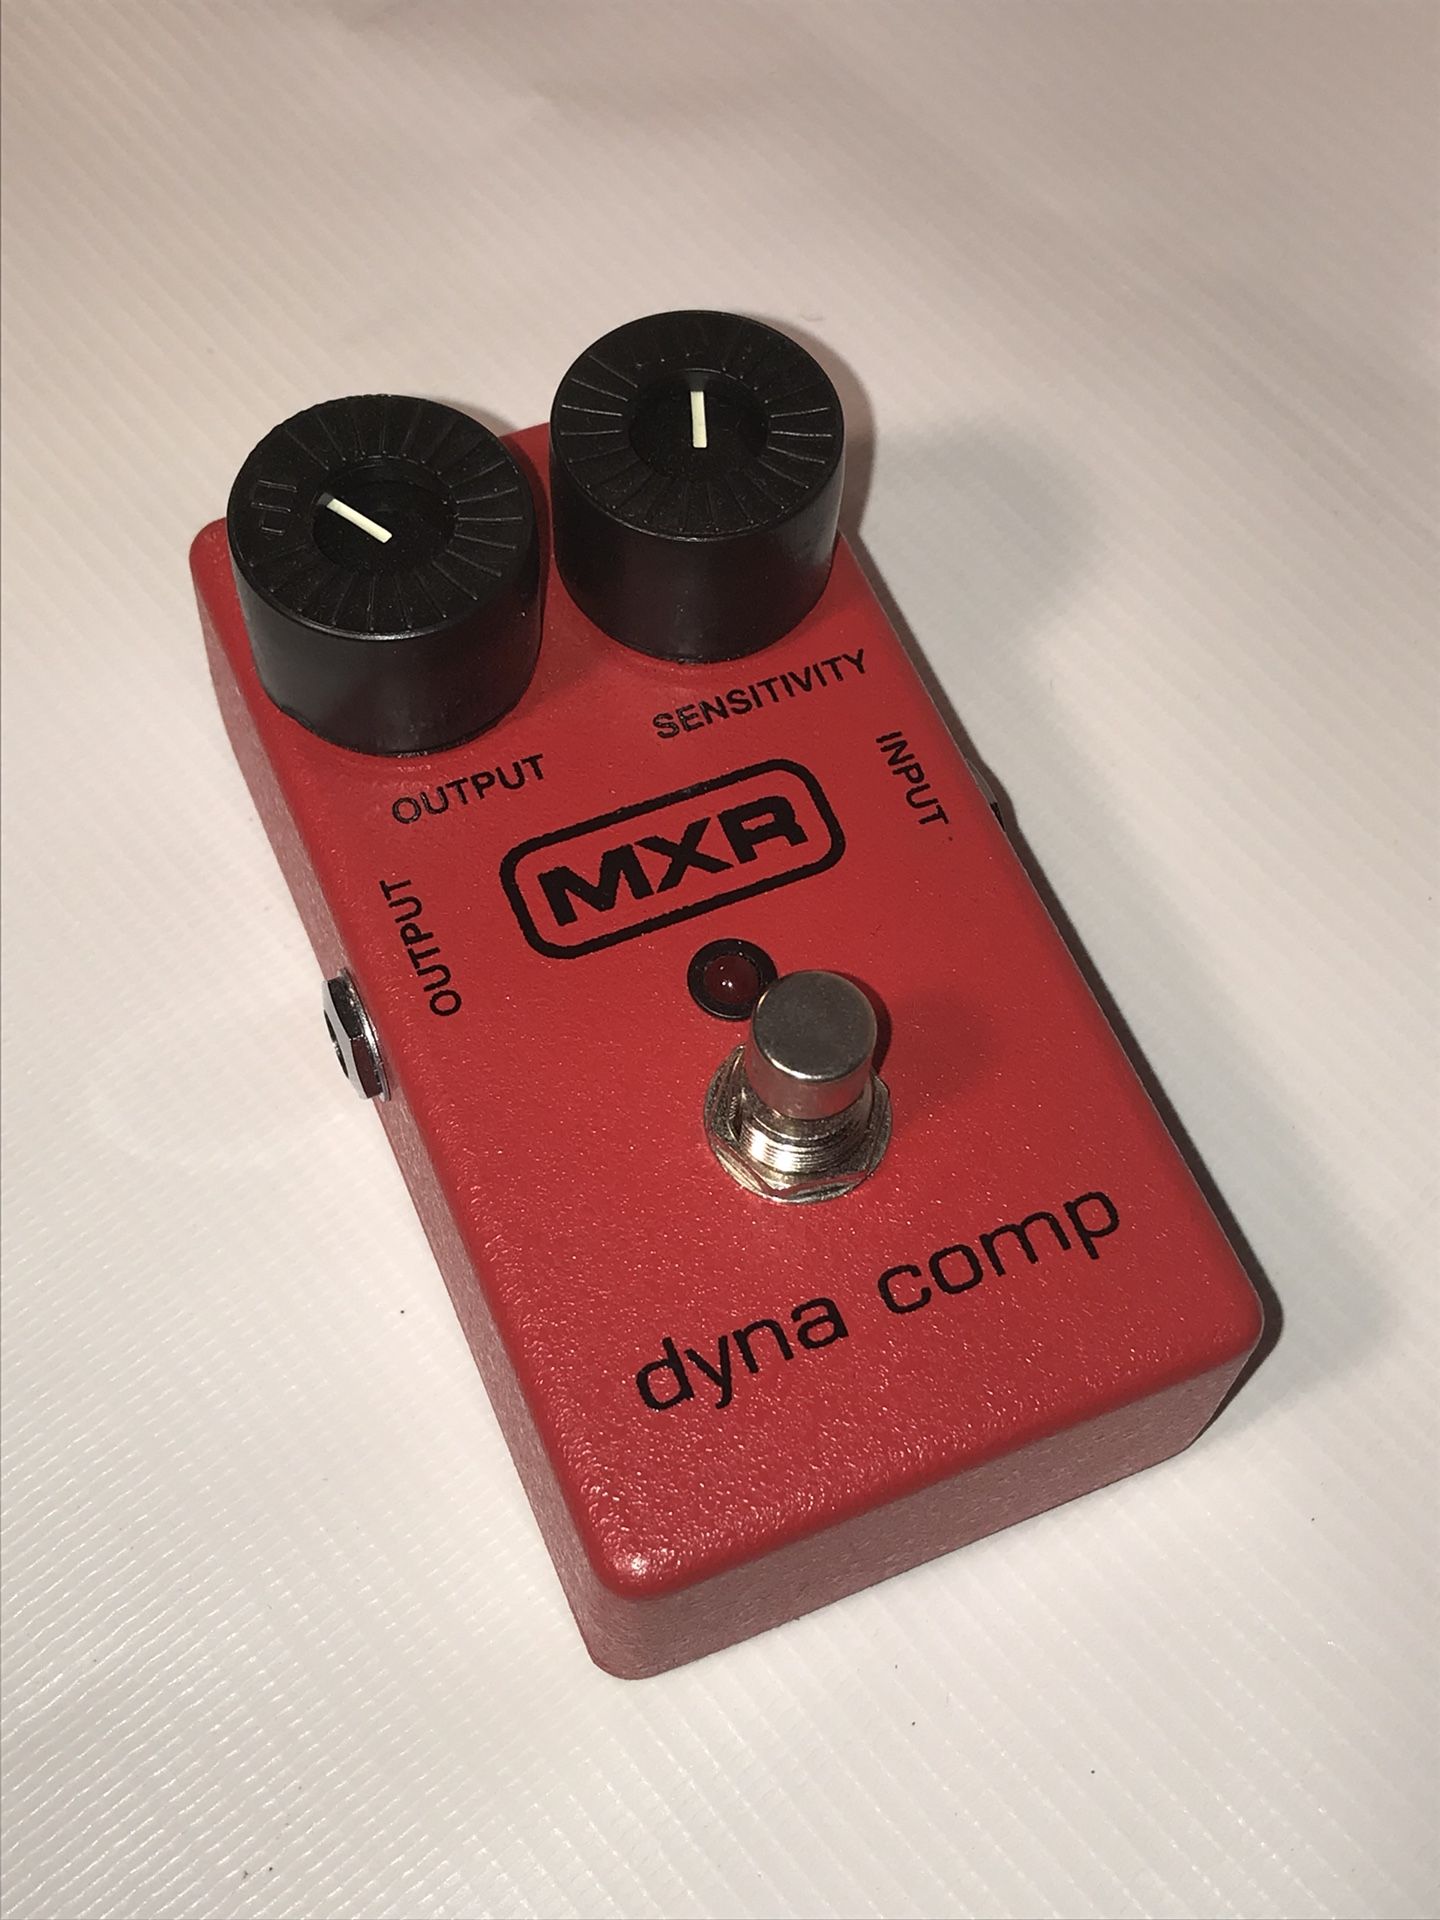 Dyna Comp - guitar compressor